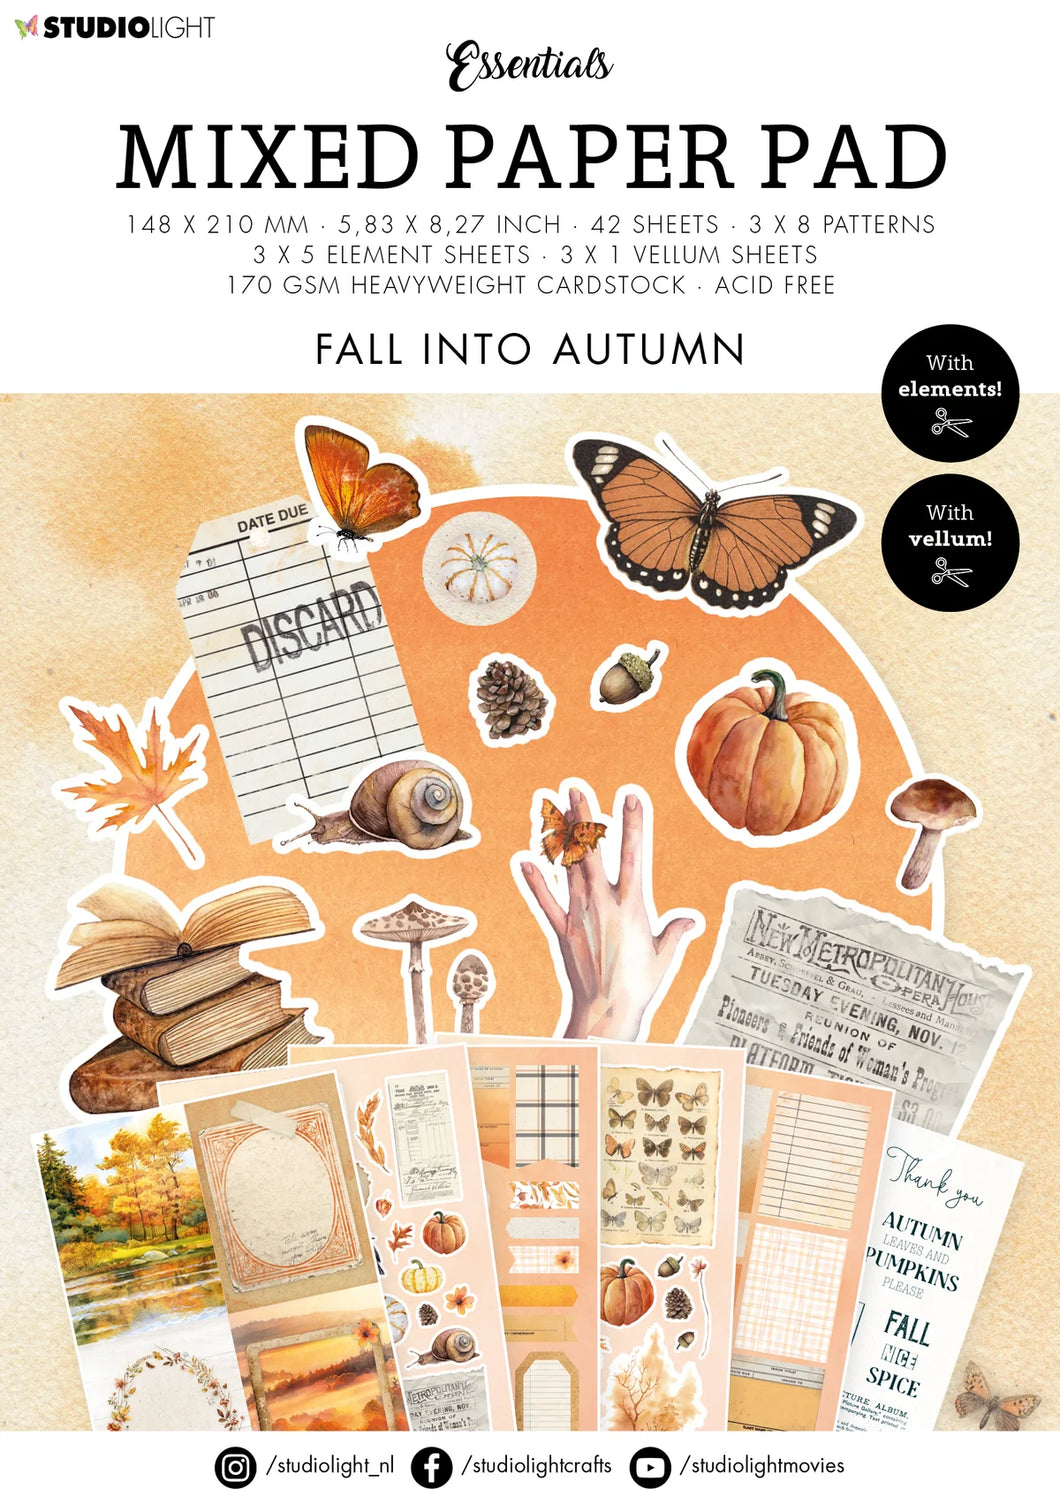 Studio Light Essentials Mixed Paper Pad Fall Into Autumn